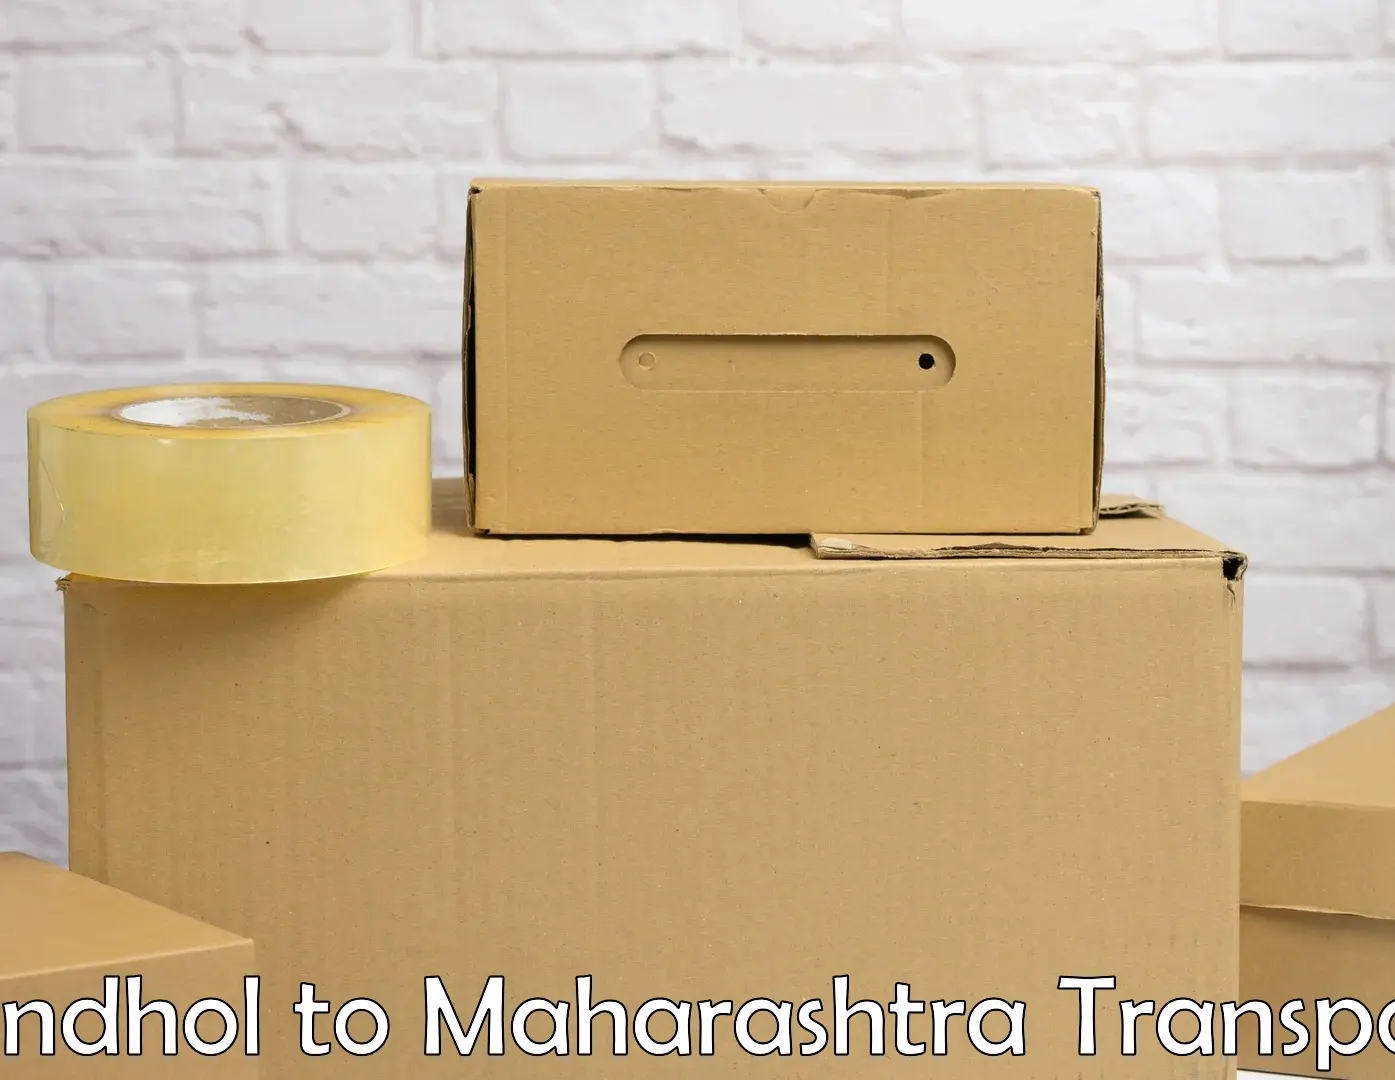 Logistics transportation services Sandhol to Maharashtra